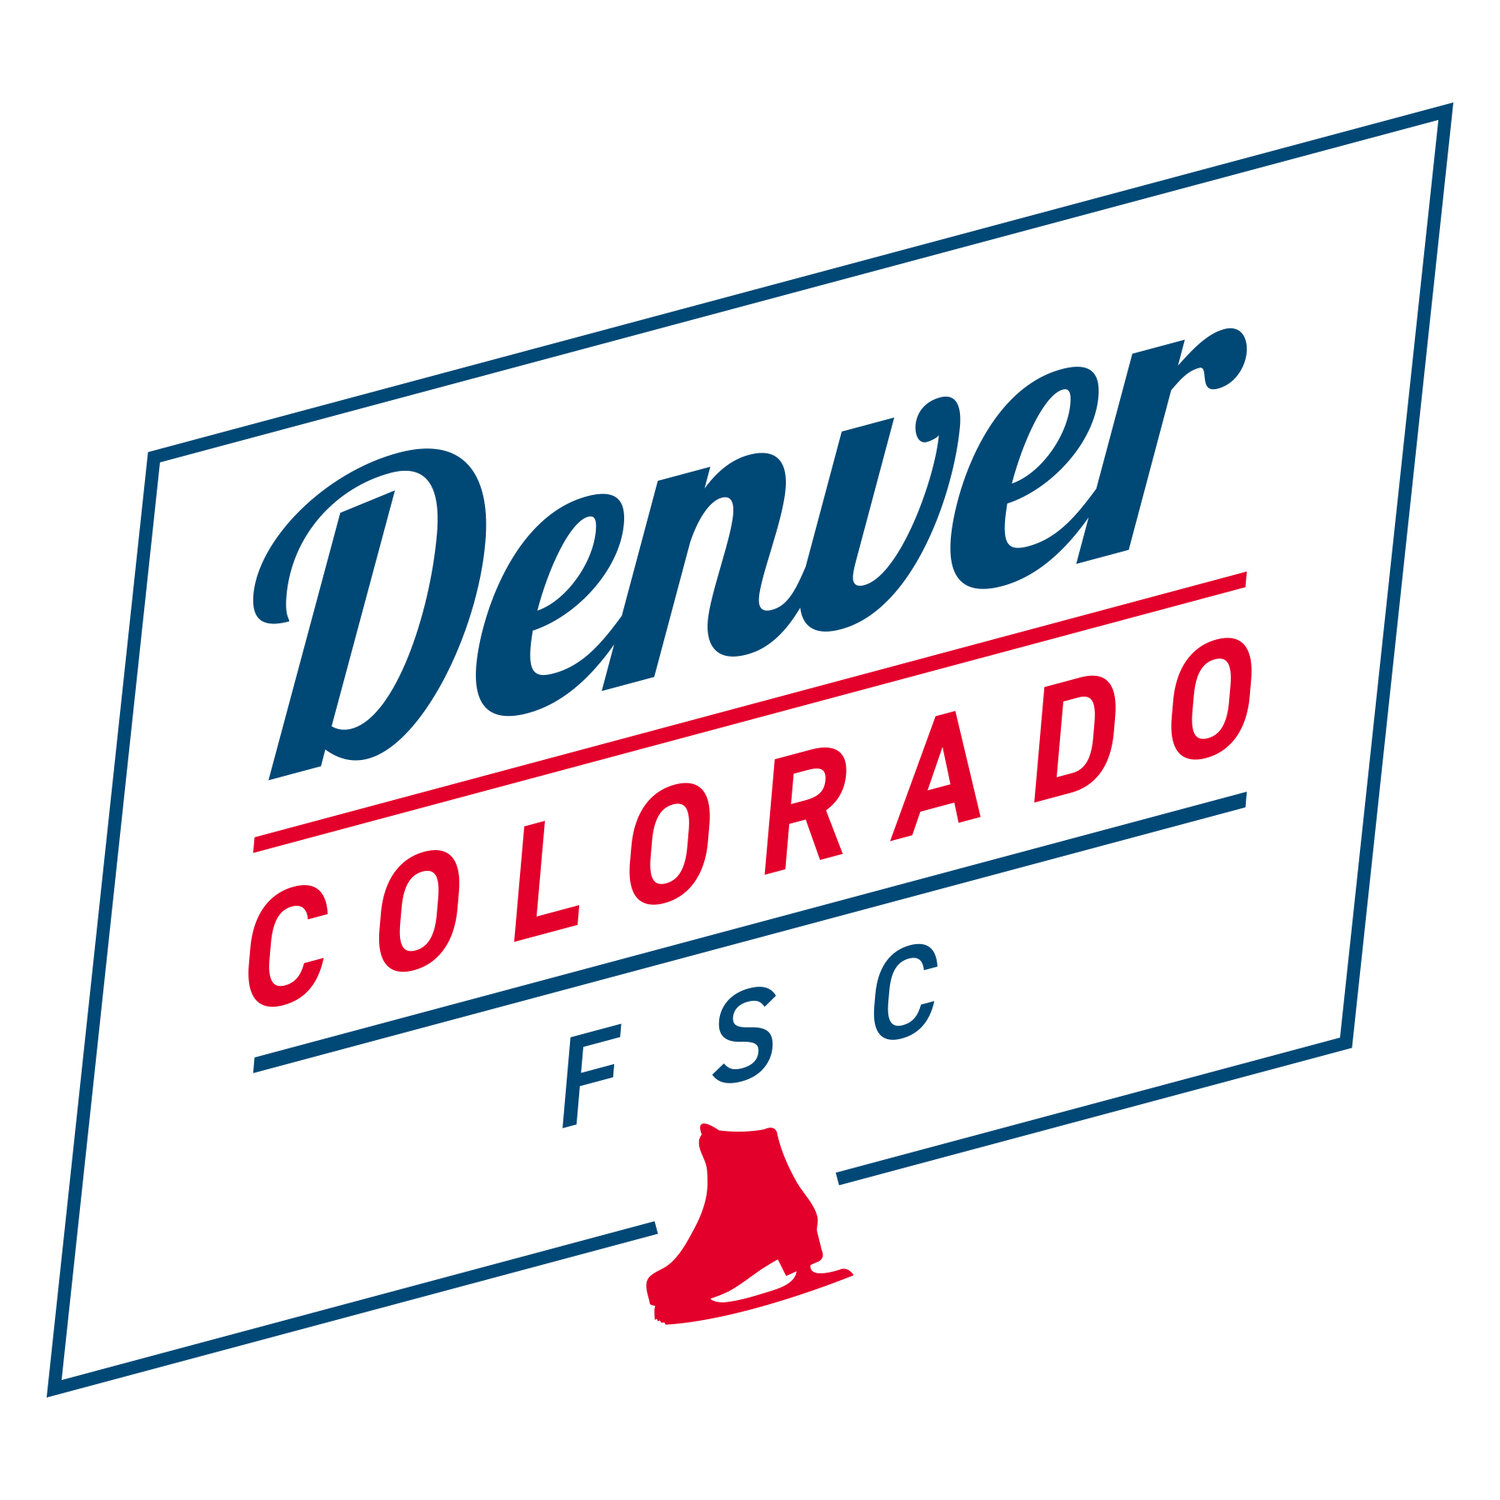 Denver Colorado FSC